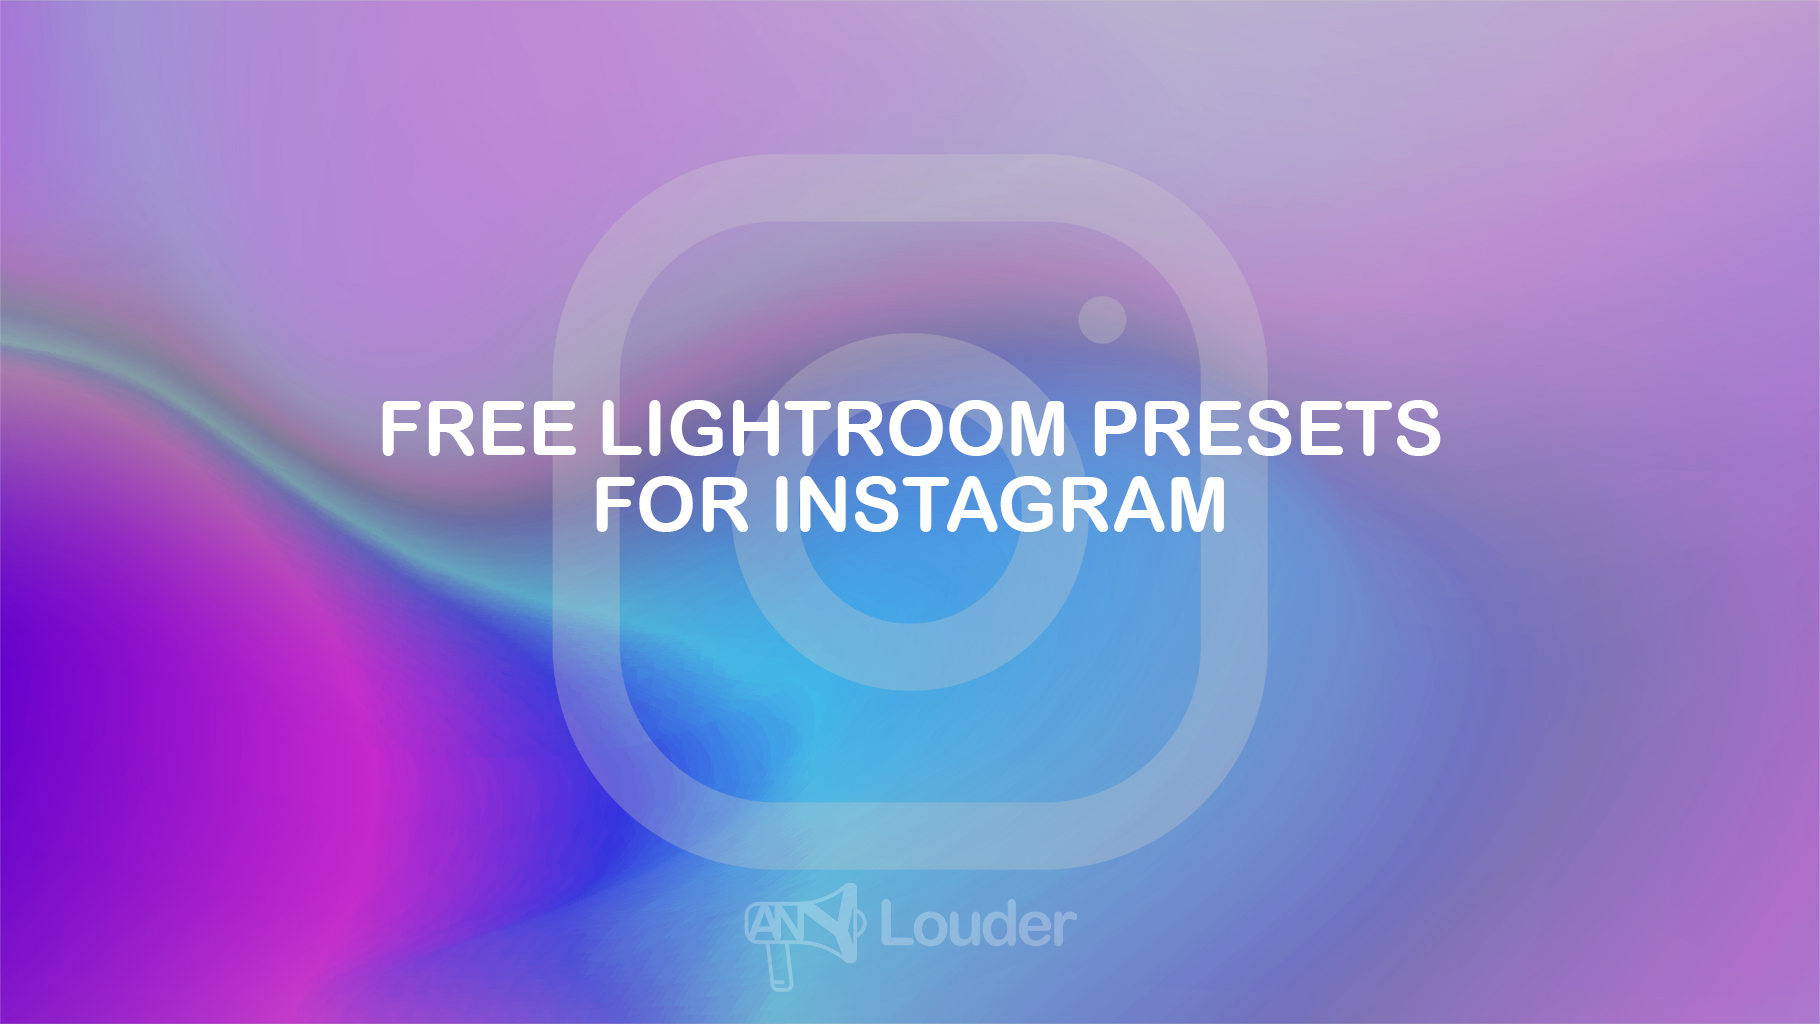 Free lightroom presets for instagram